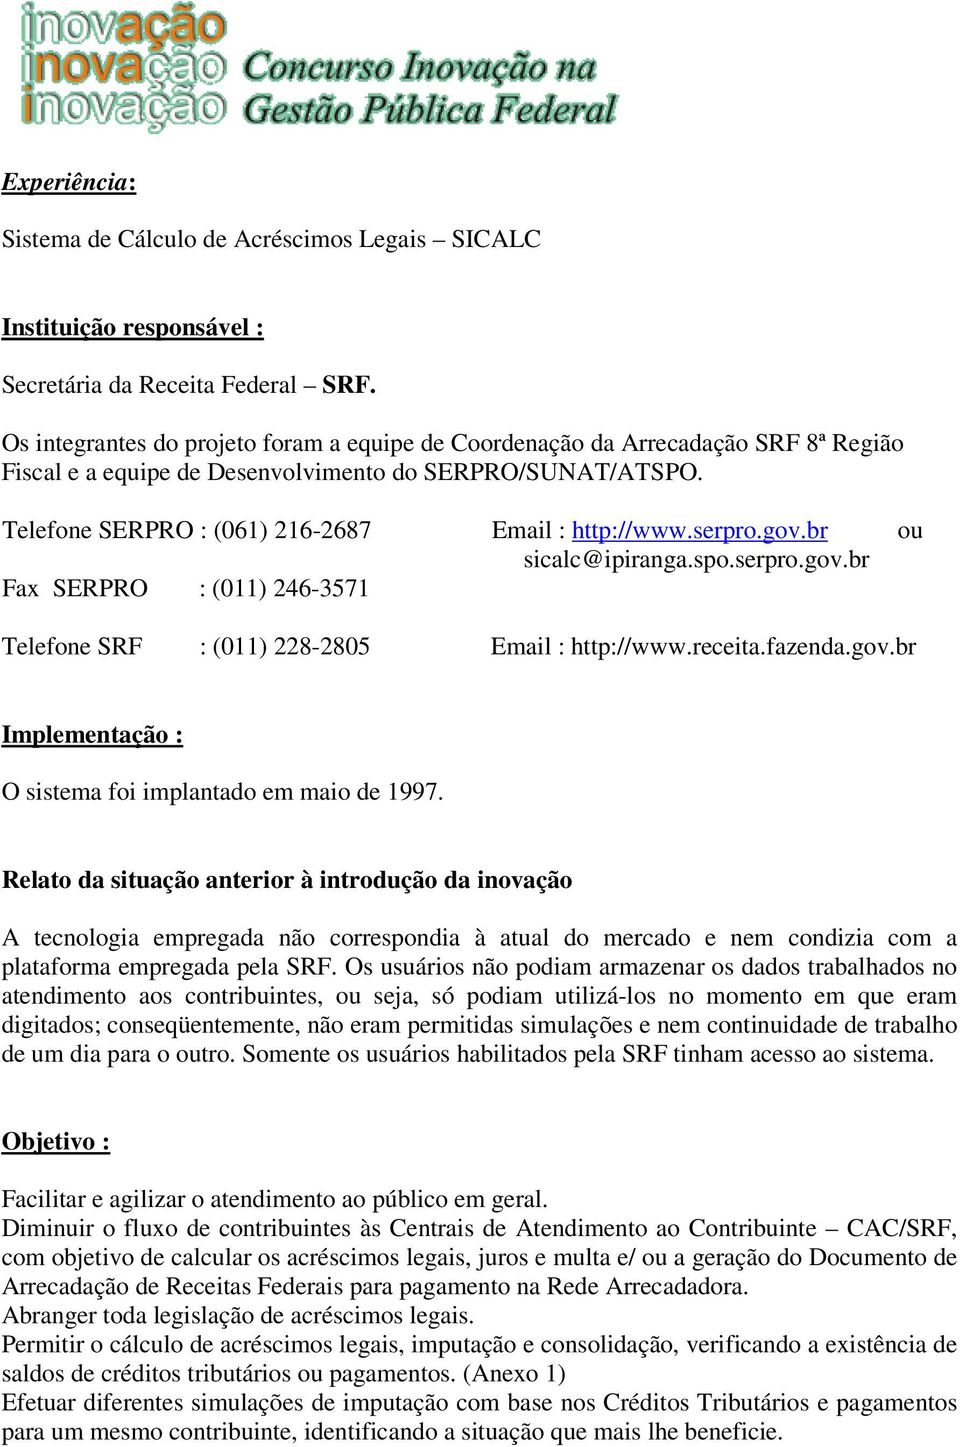 serpro.gov.br ou sicalc@ipiranga.spo.serpro.gov.br Fax SERPRO : (011) 246-3571 Telefone SRF : (011) 228-2805 Email : http://www.receita.fazenda.gov.br Implementação : O sistema foi implantado em maio de 1997.